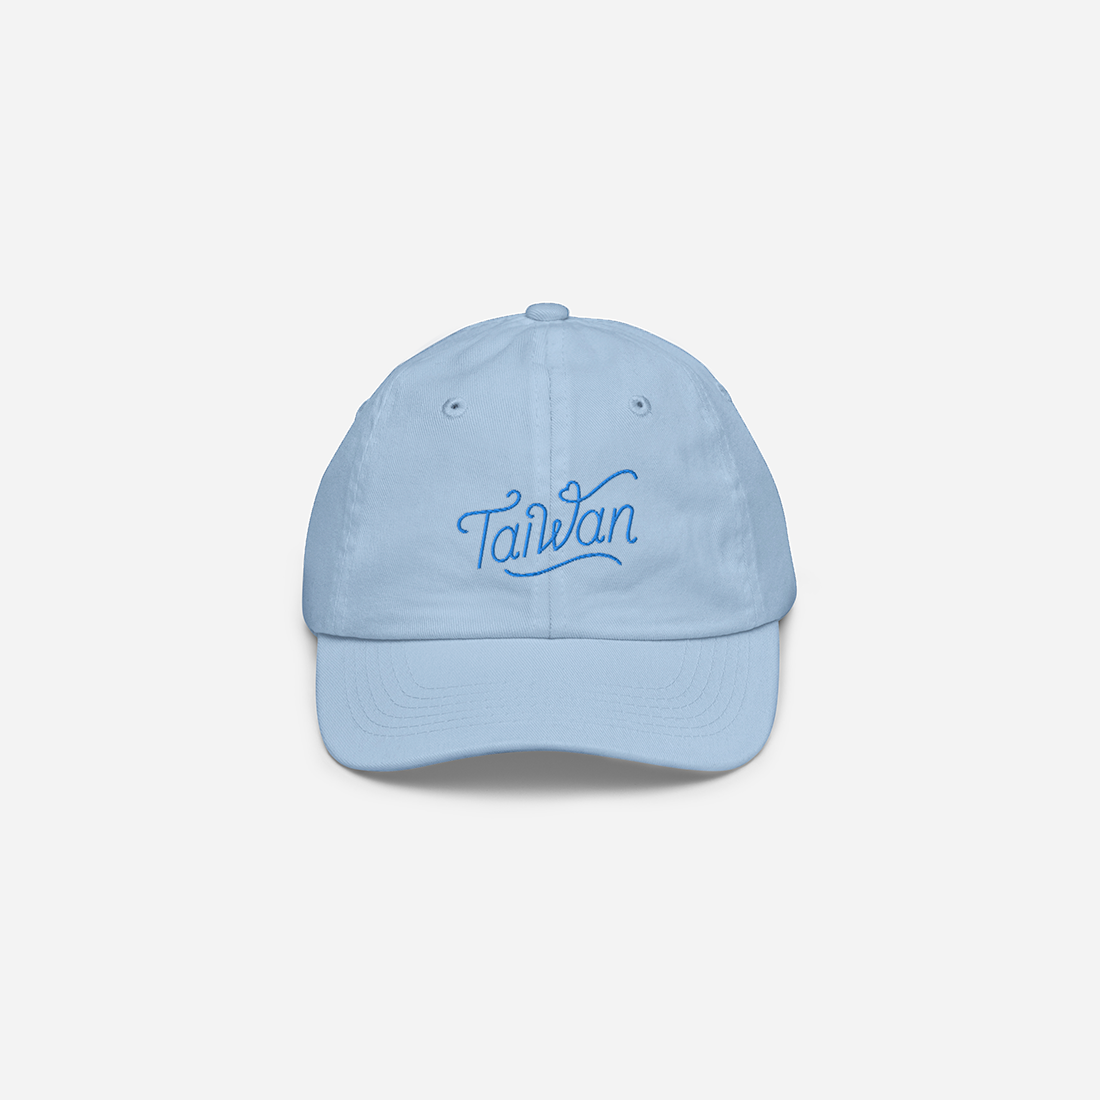 Taiwan Kid's Hat (Blue)